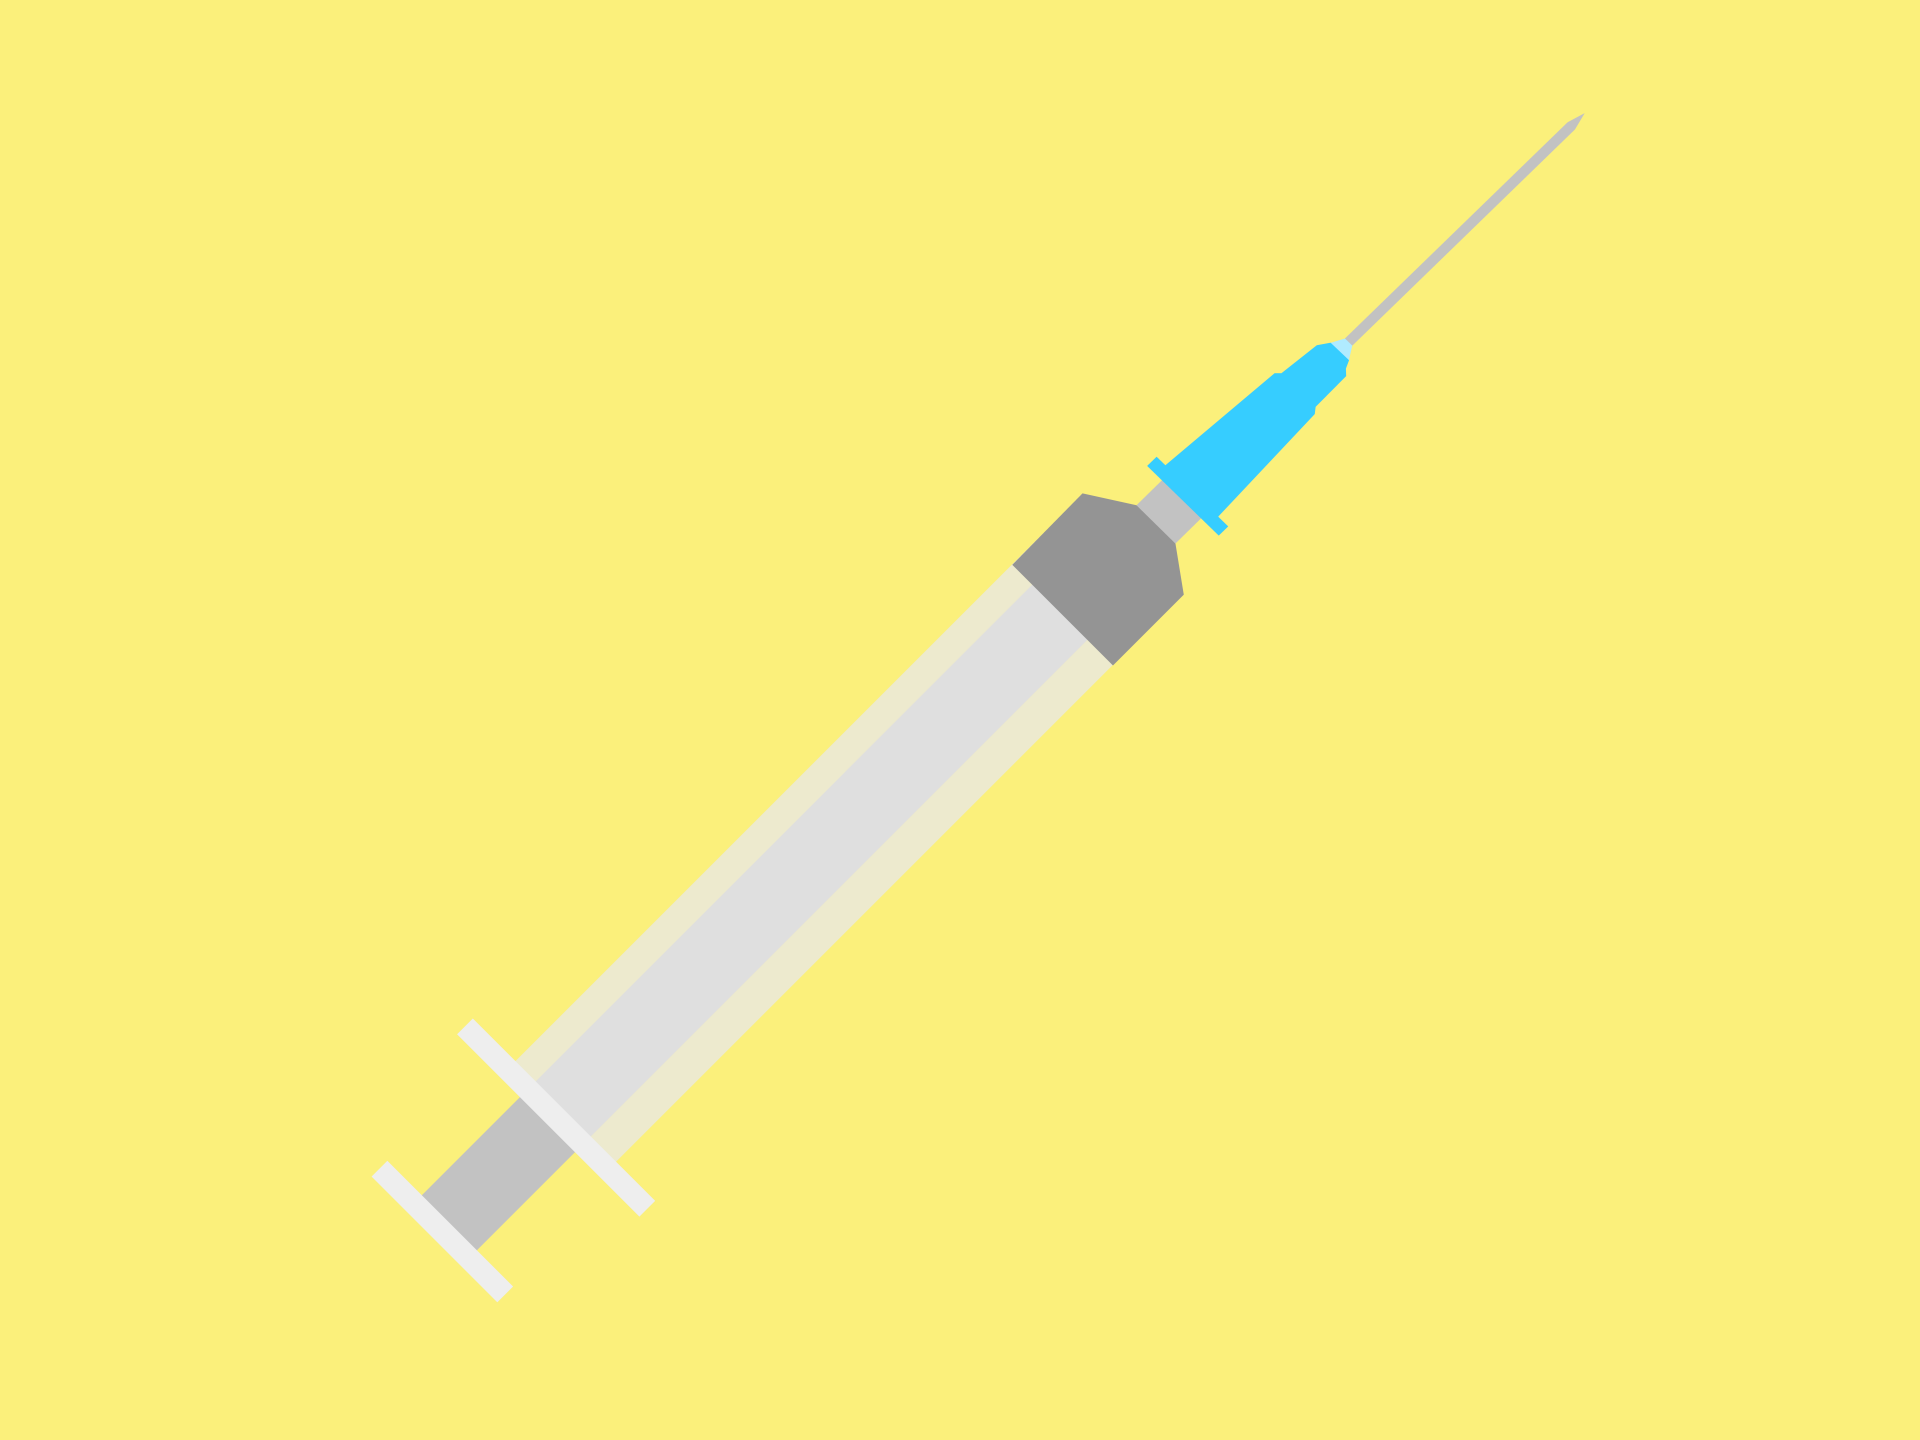 Syringe with a needle illustration on yellow background